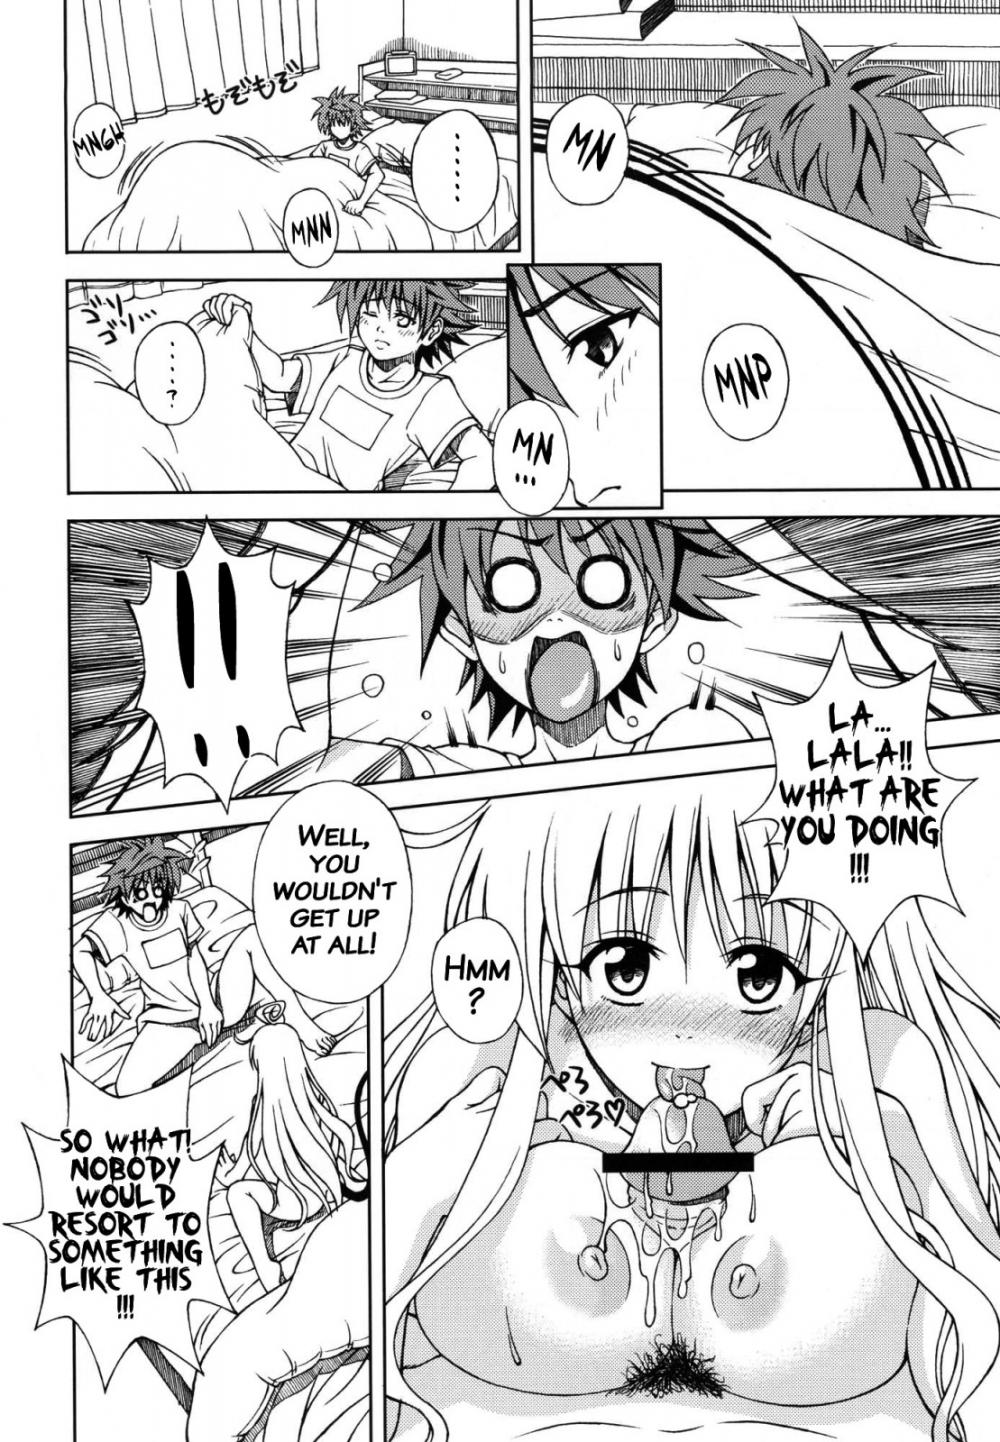 Hentai Manga Comic-Terrible x Trouble-Read-3